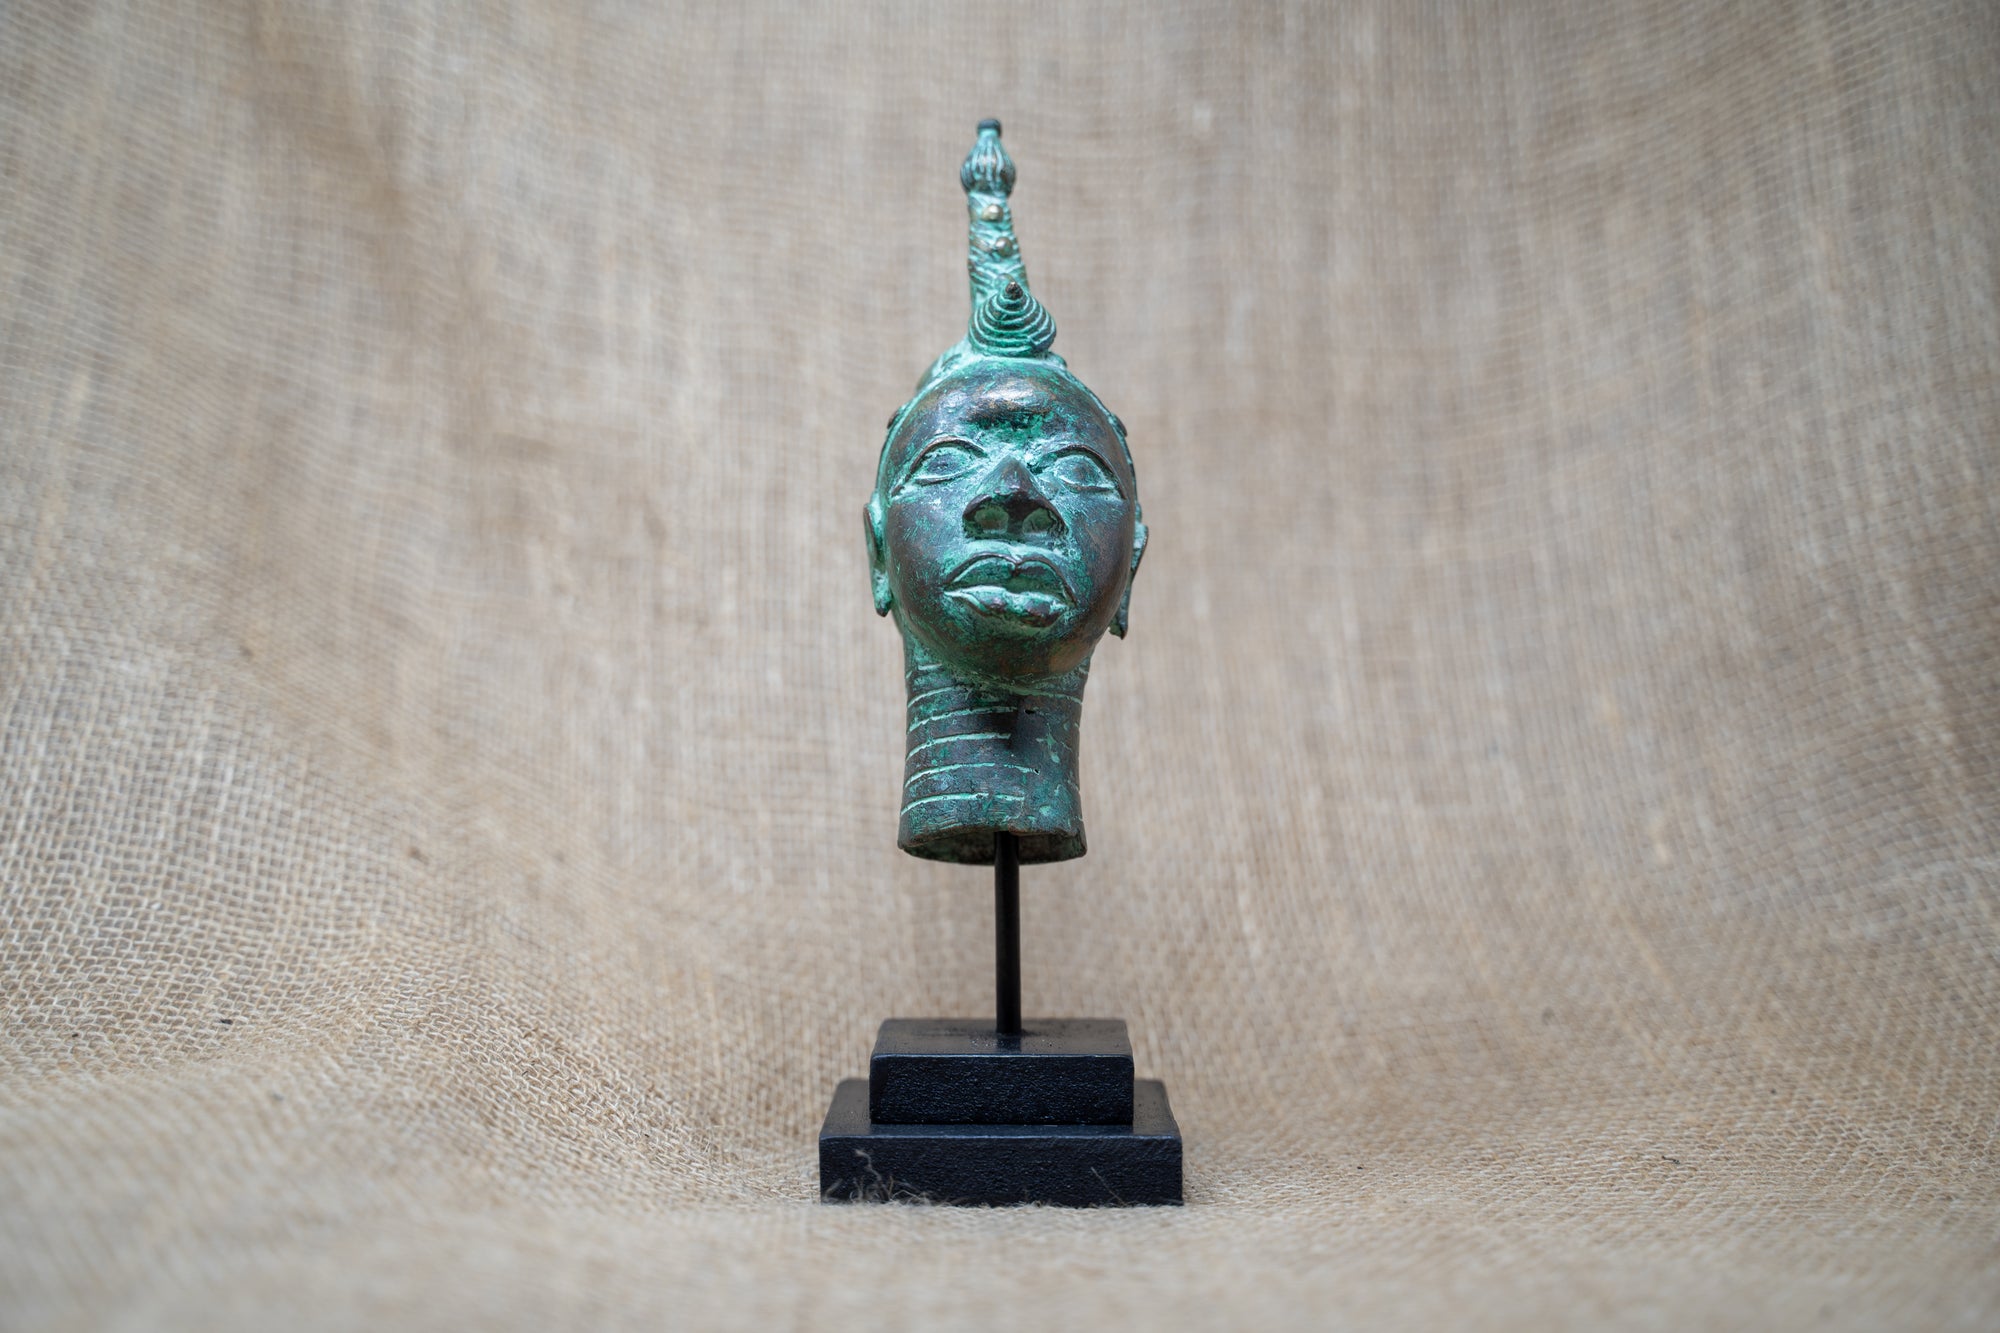 Benin Bronze Head - 37.1